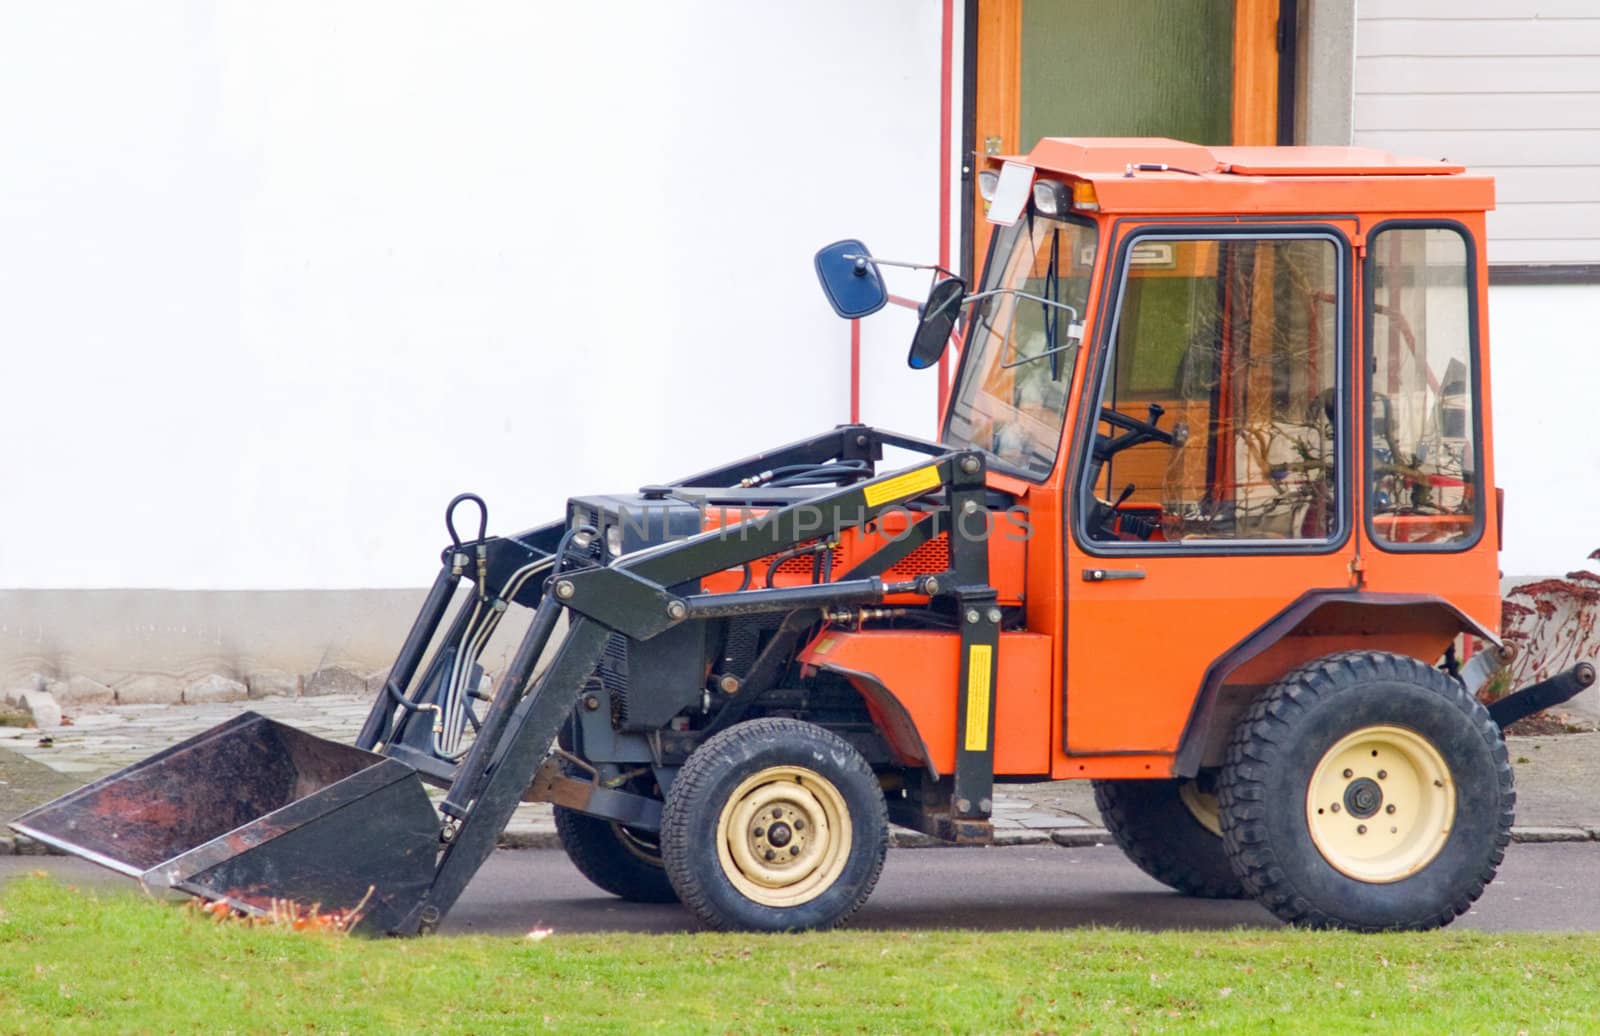 Orange tractor with scoop bucket  in the suburbs